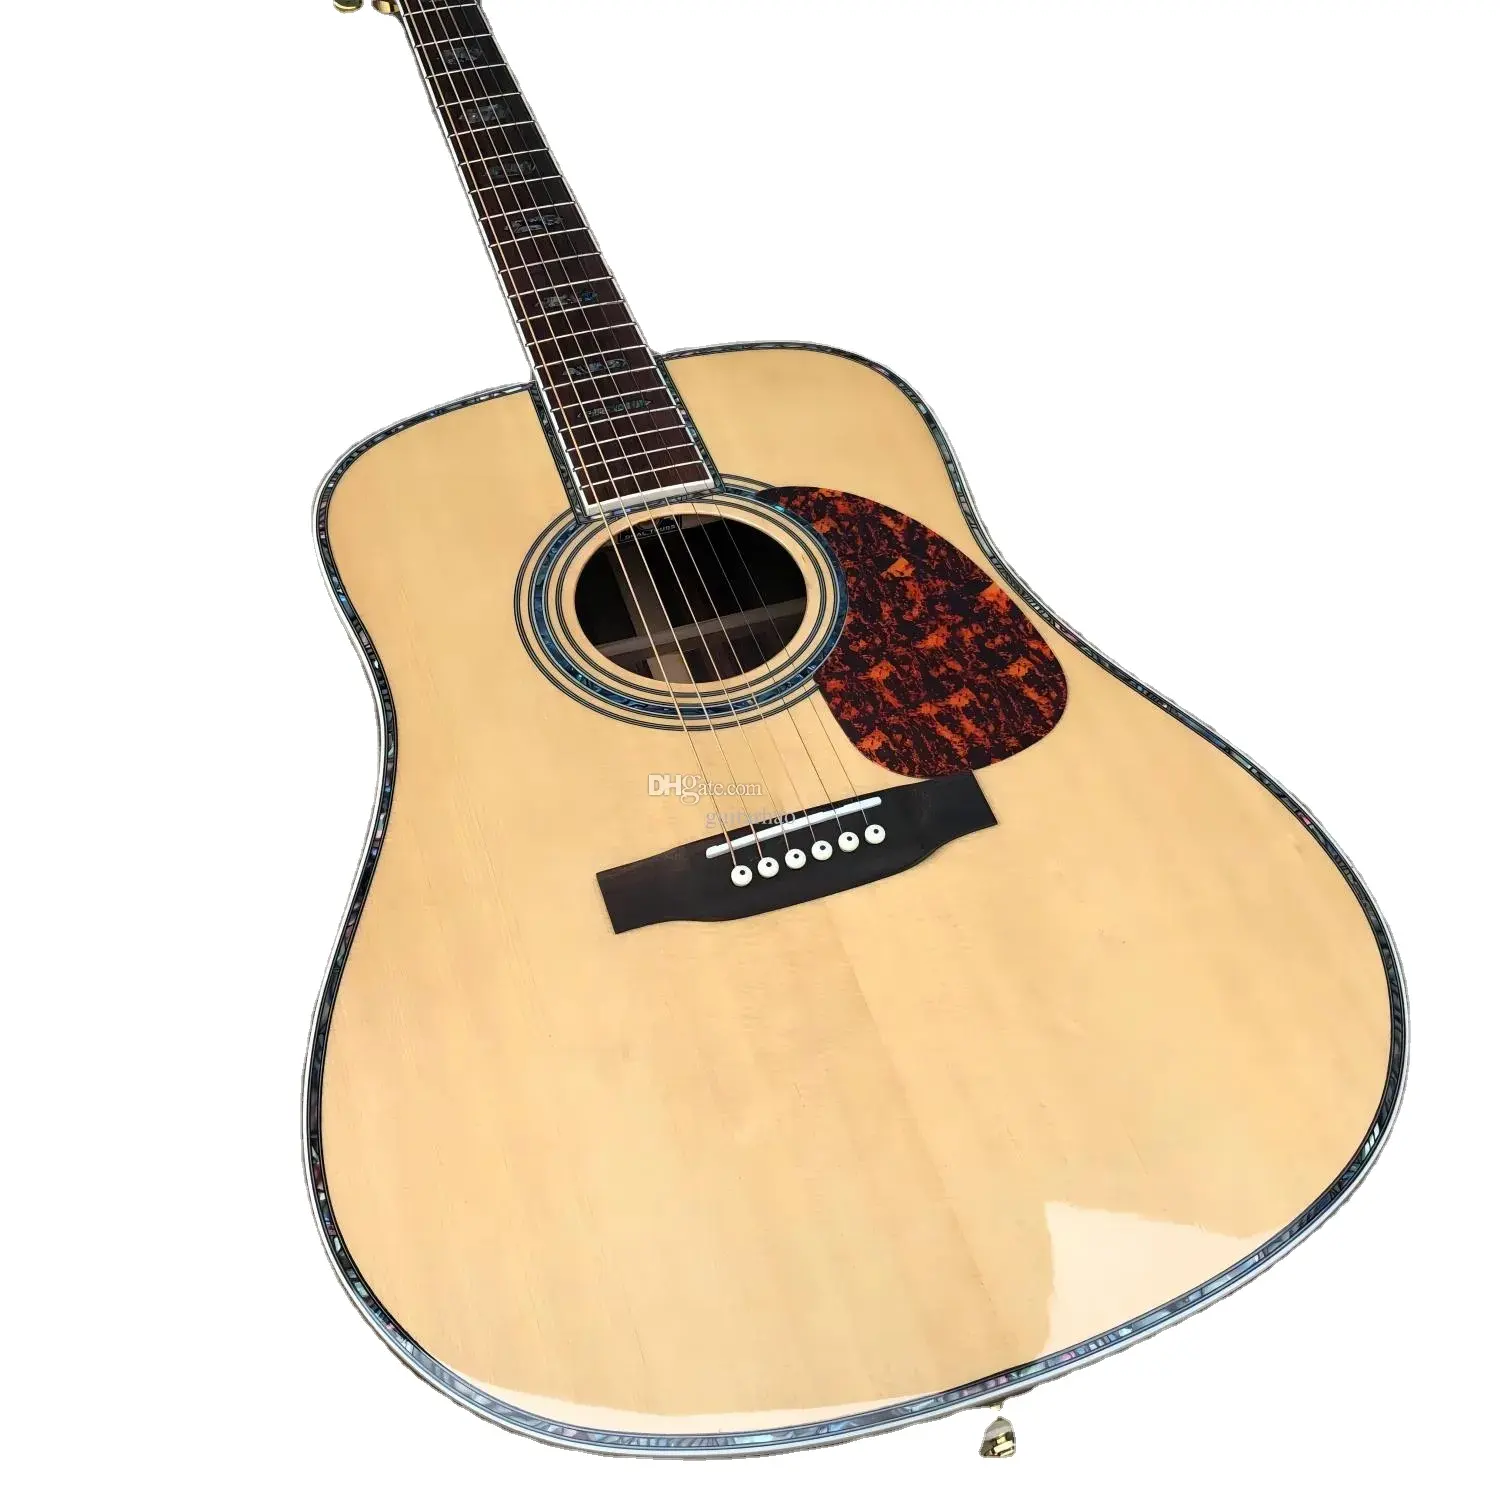 ध्वनिक गिटार, 41'' 45 डी 20 फ्रेट्स पर्ल इनले ईक्यू के साथ, शीर्ष ठोस स्प्रूस, तरफ गुलाब की लकड़ी